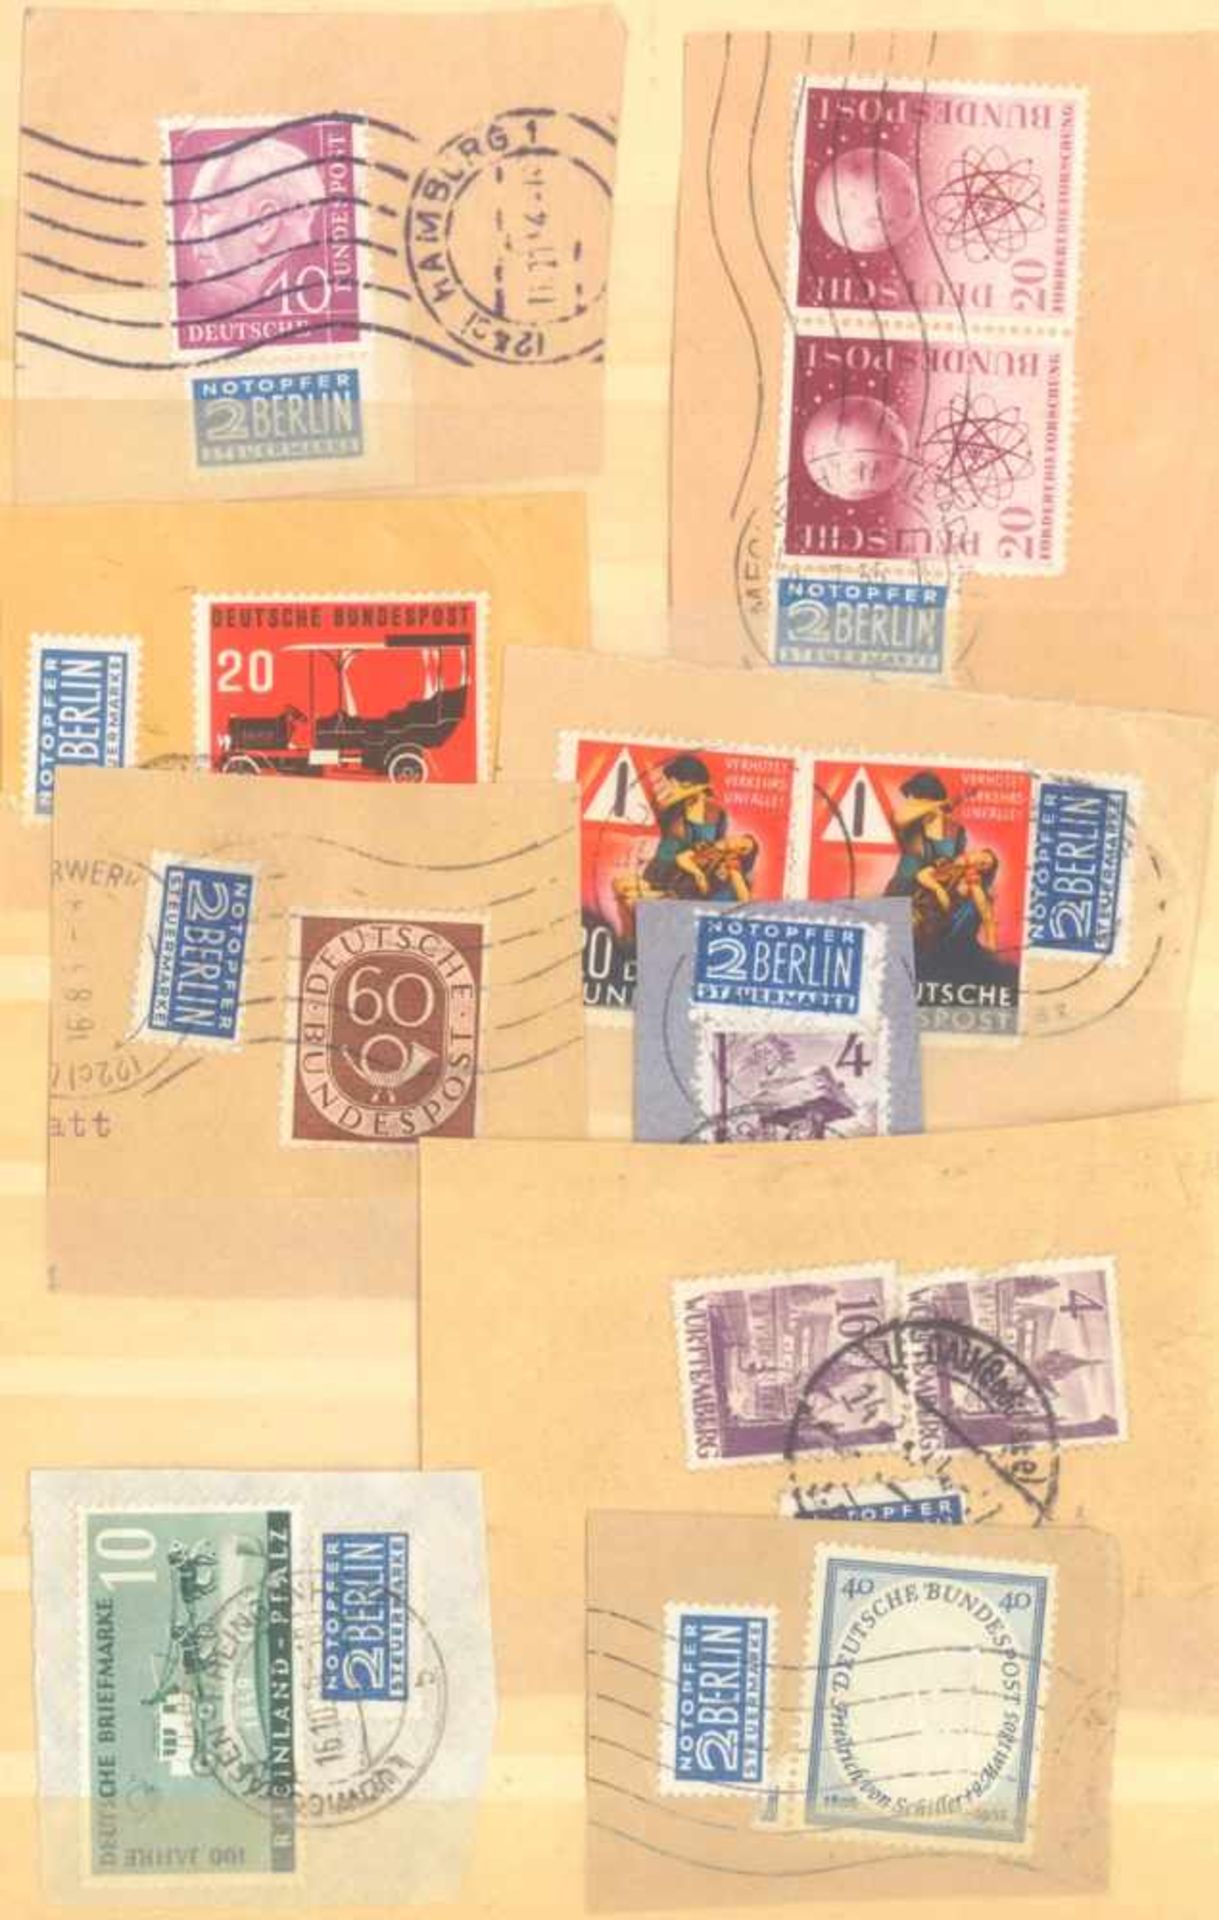 FRANKENTHALER NACHLASSuriger Nachlass mit Briefmarken und Belegen. Dabei DeutschesReich, altes - Bild 30 aus 46